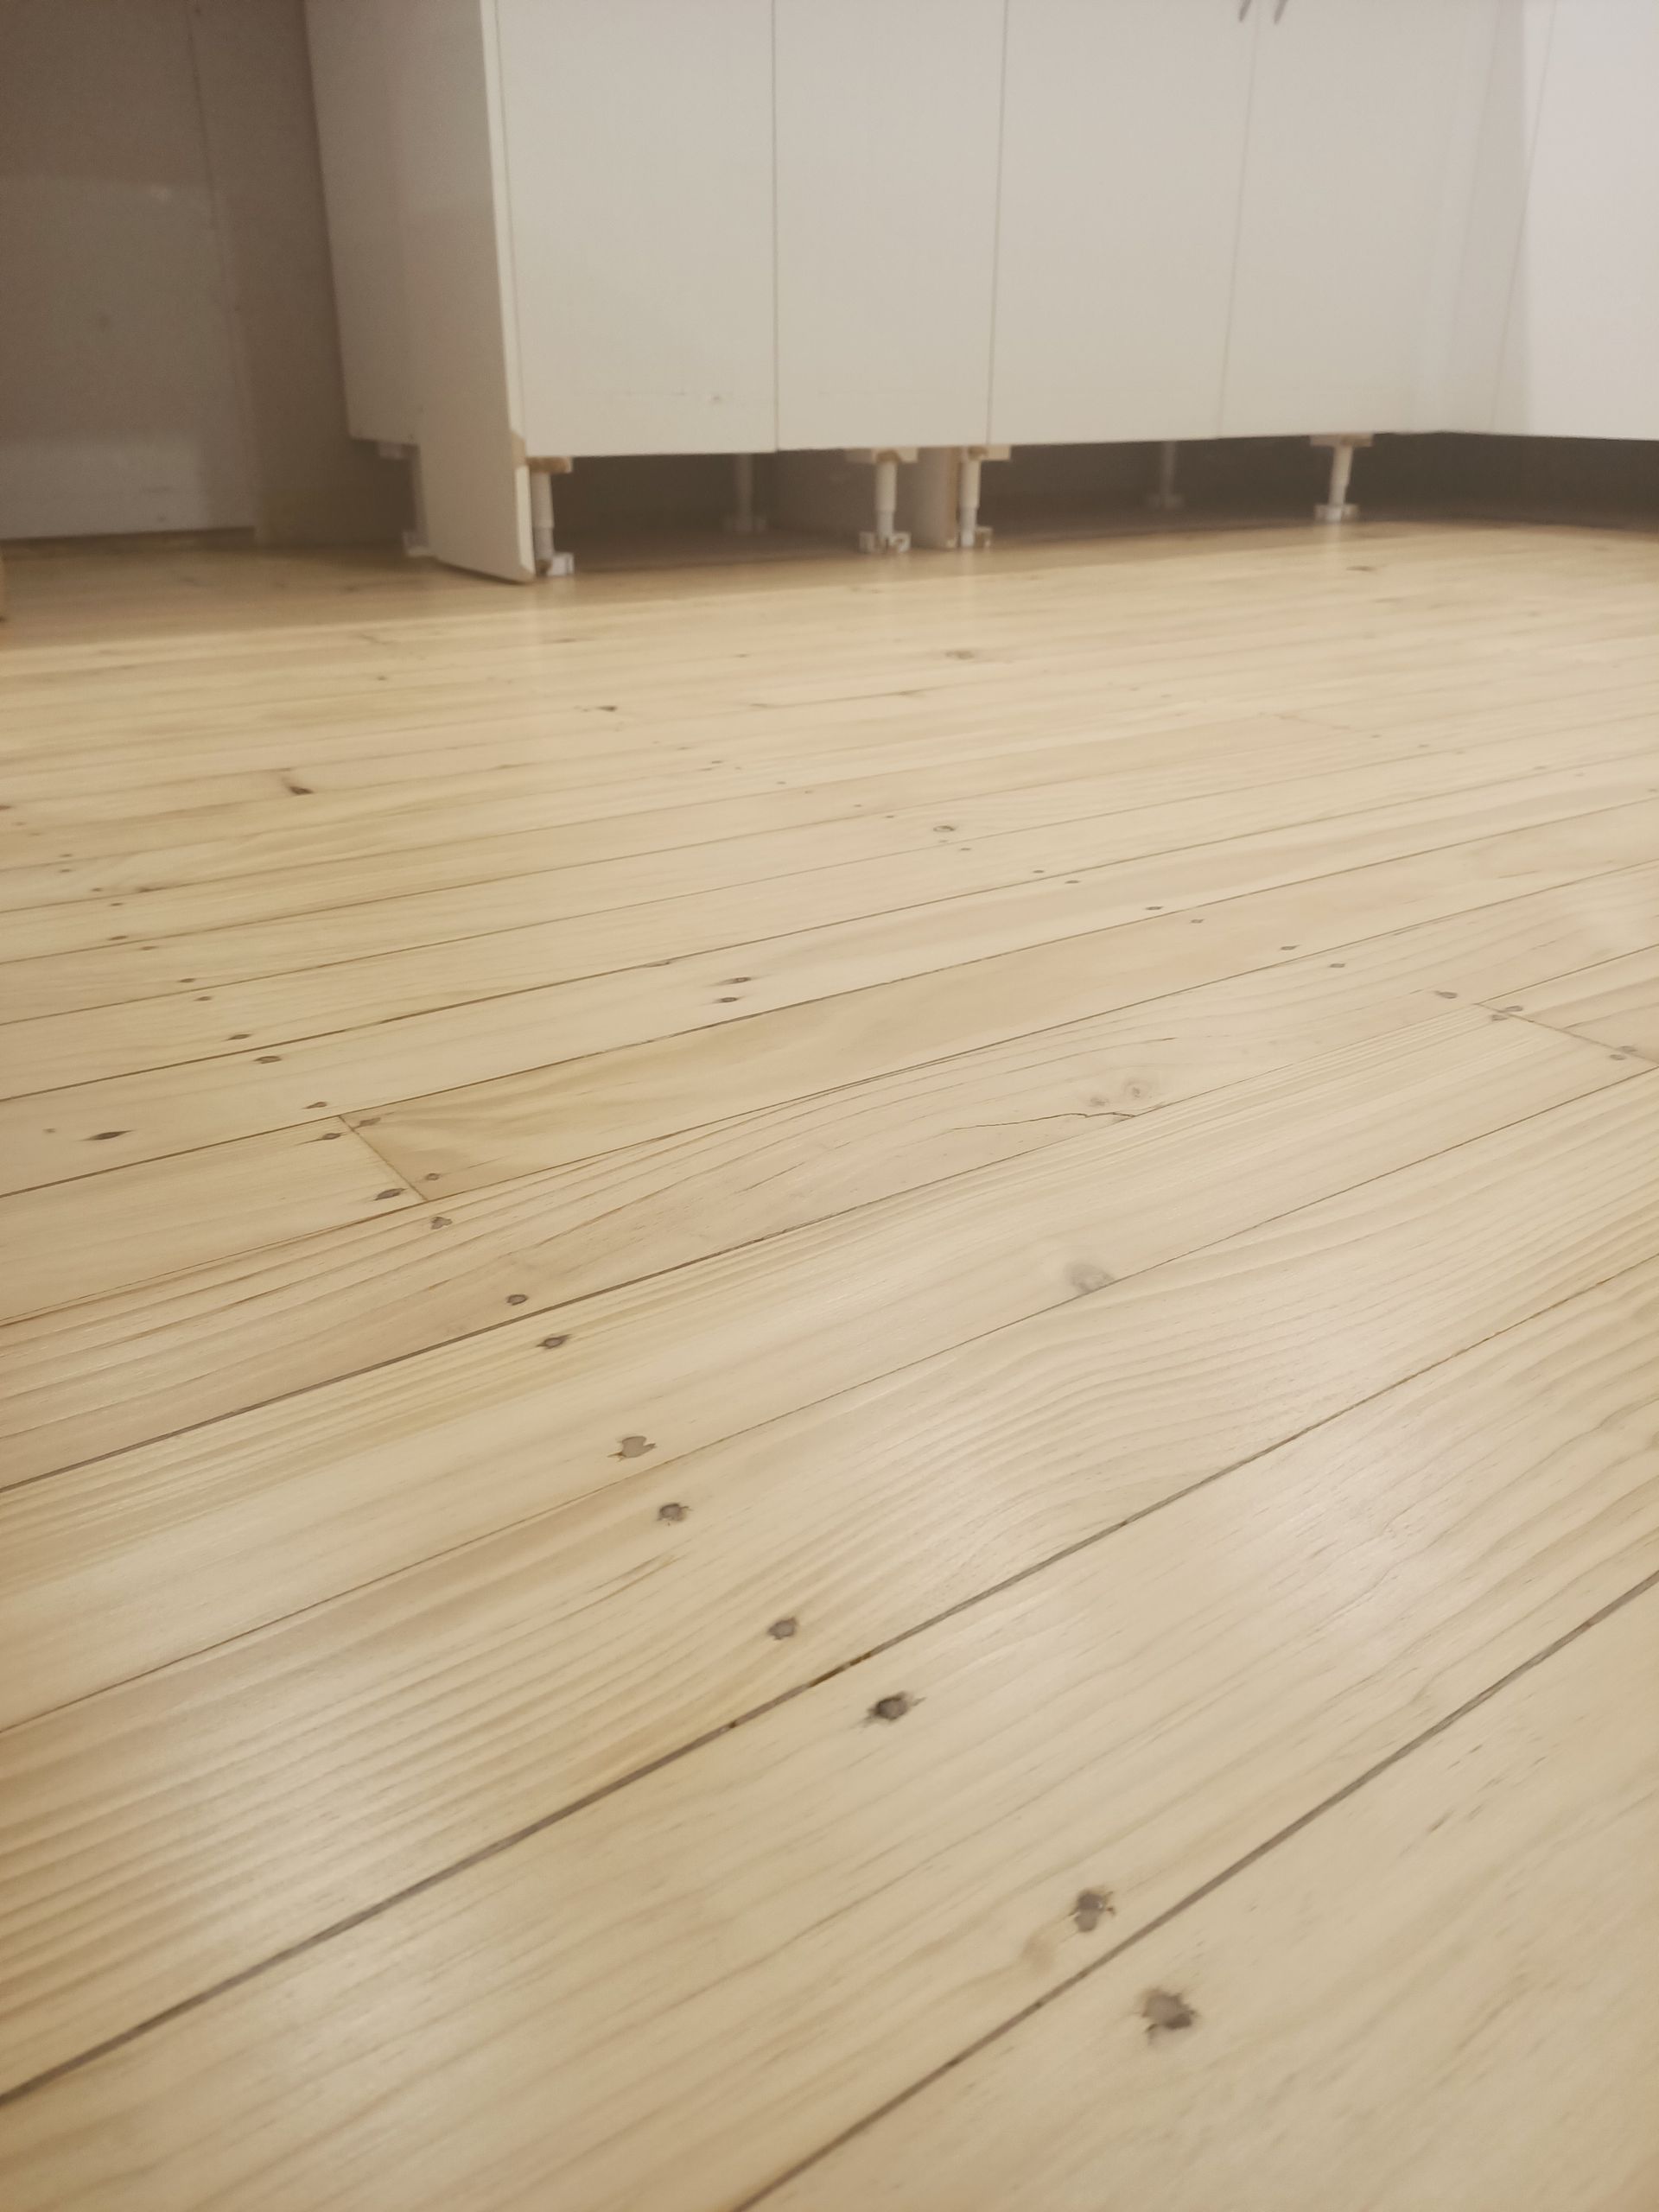 Mighty Bull Floor Sanding pine floor after image